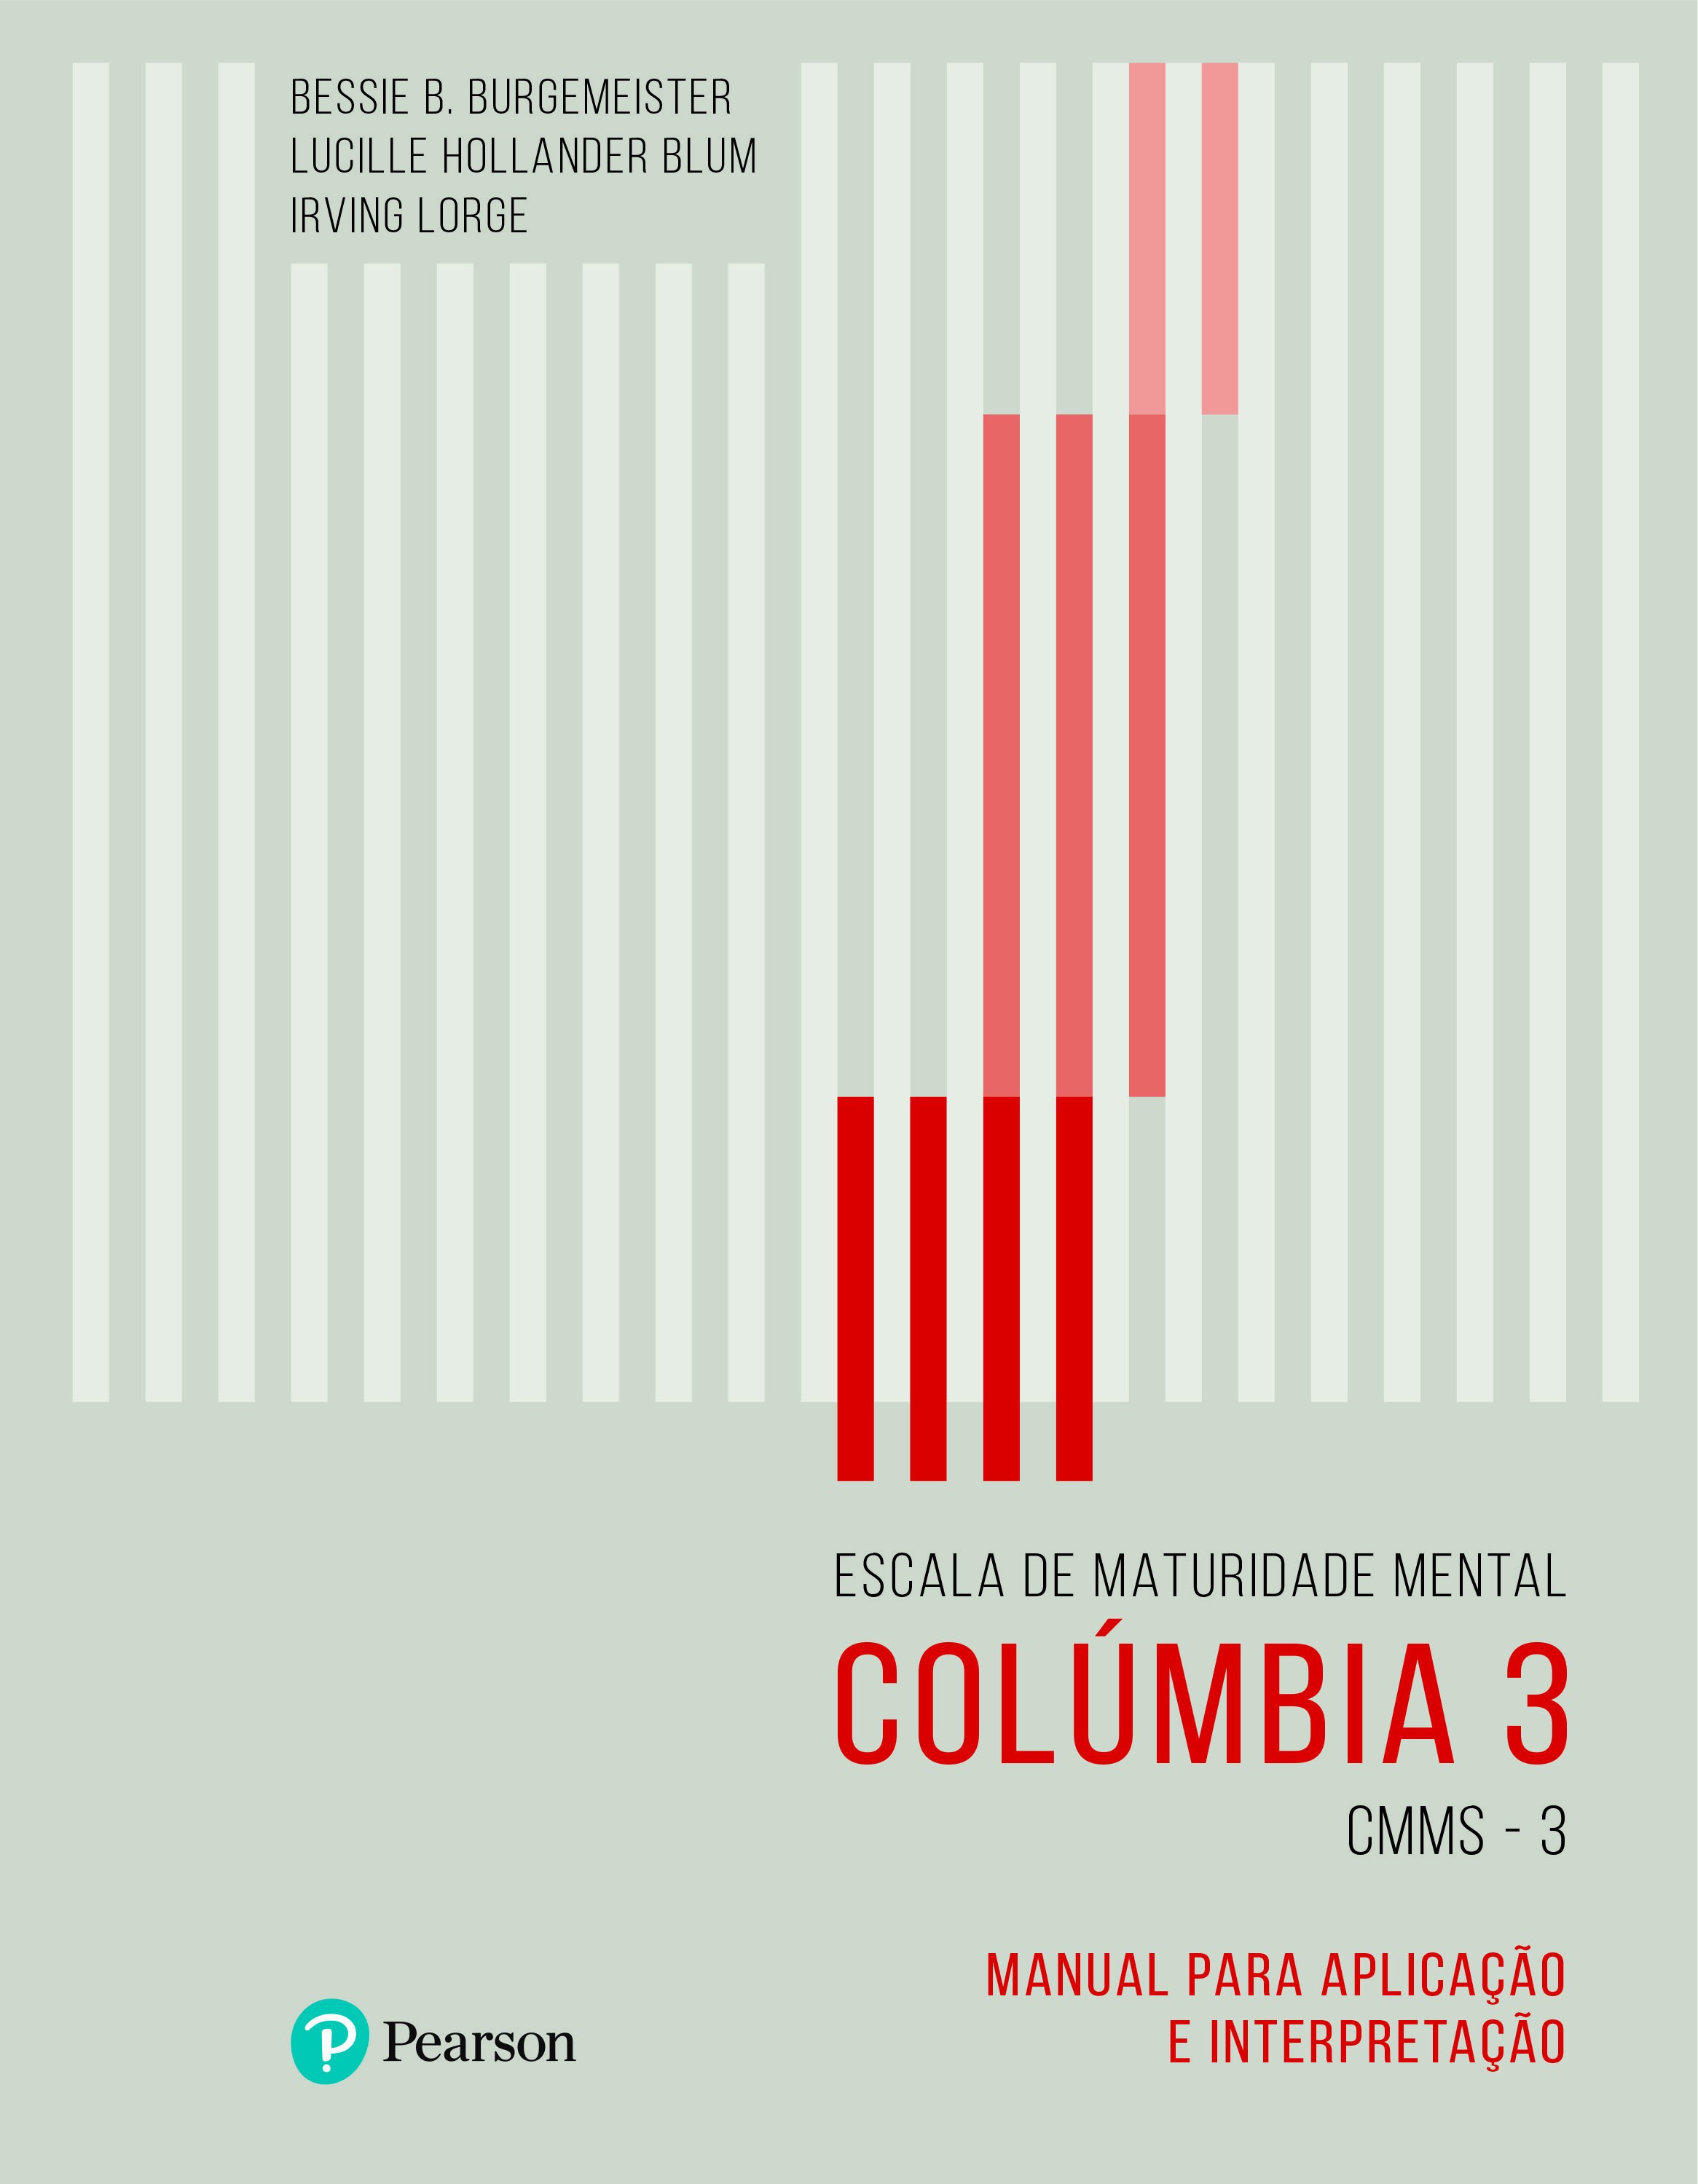 COLÚMBIA 3 - Bloco de Respostas - CMMS-3